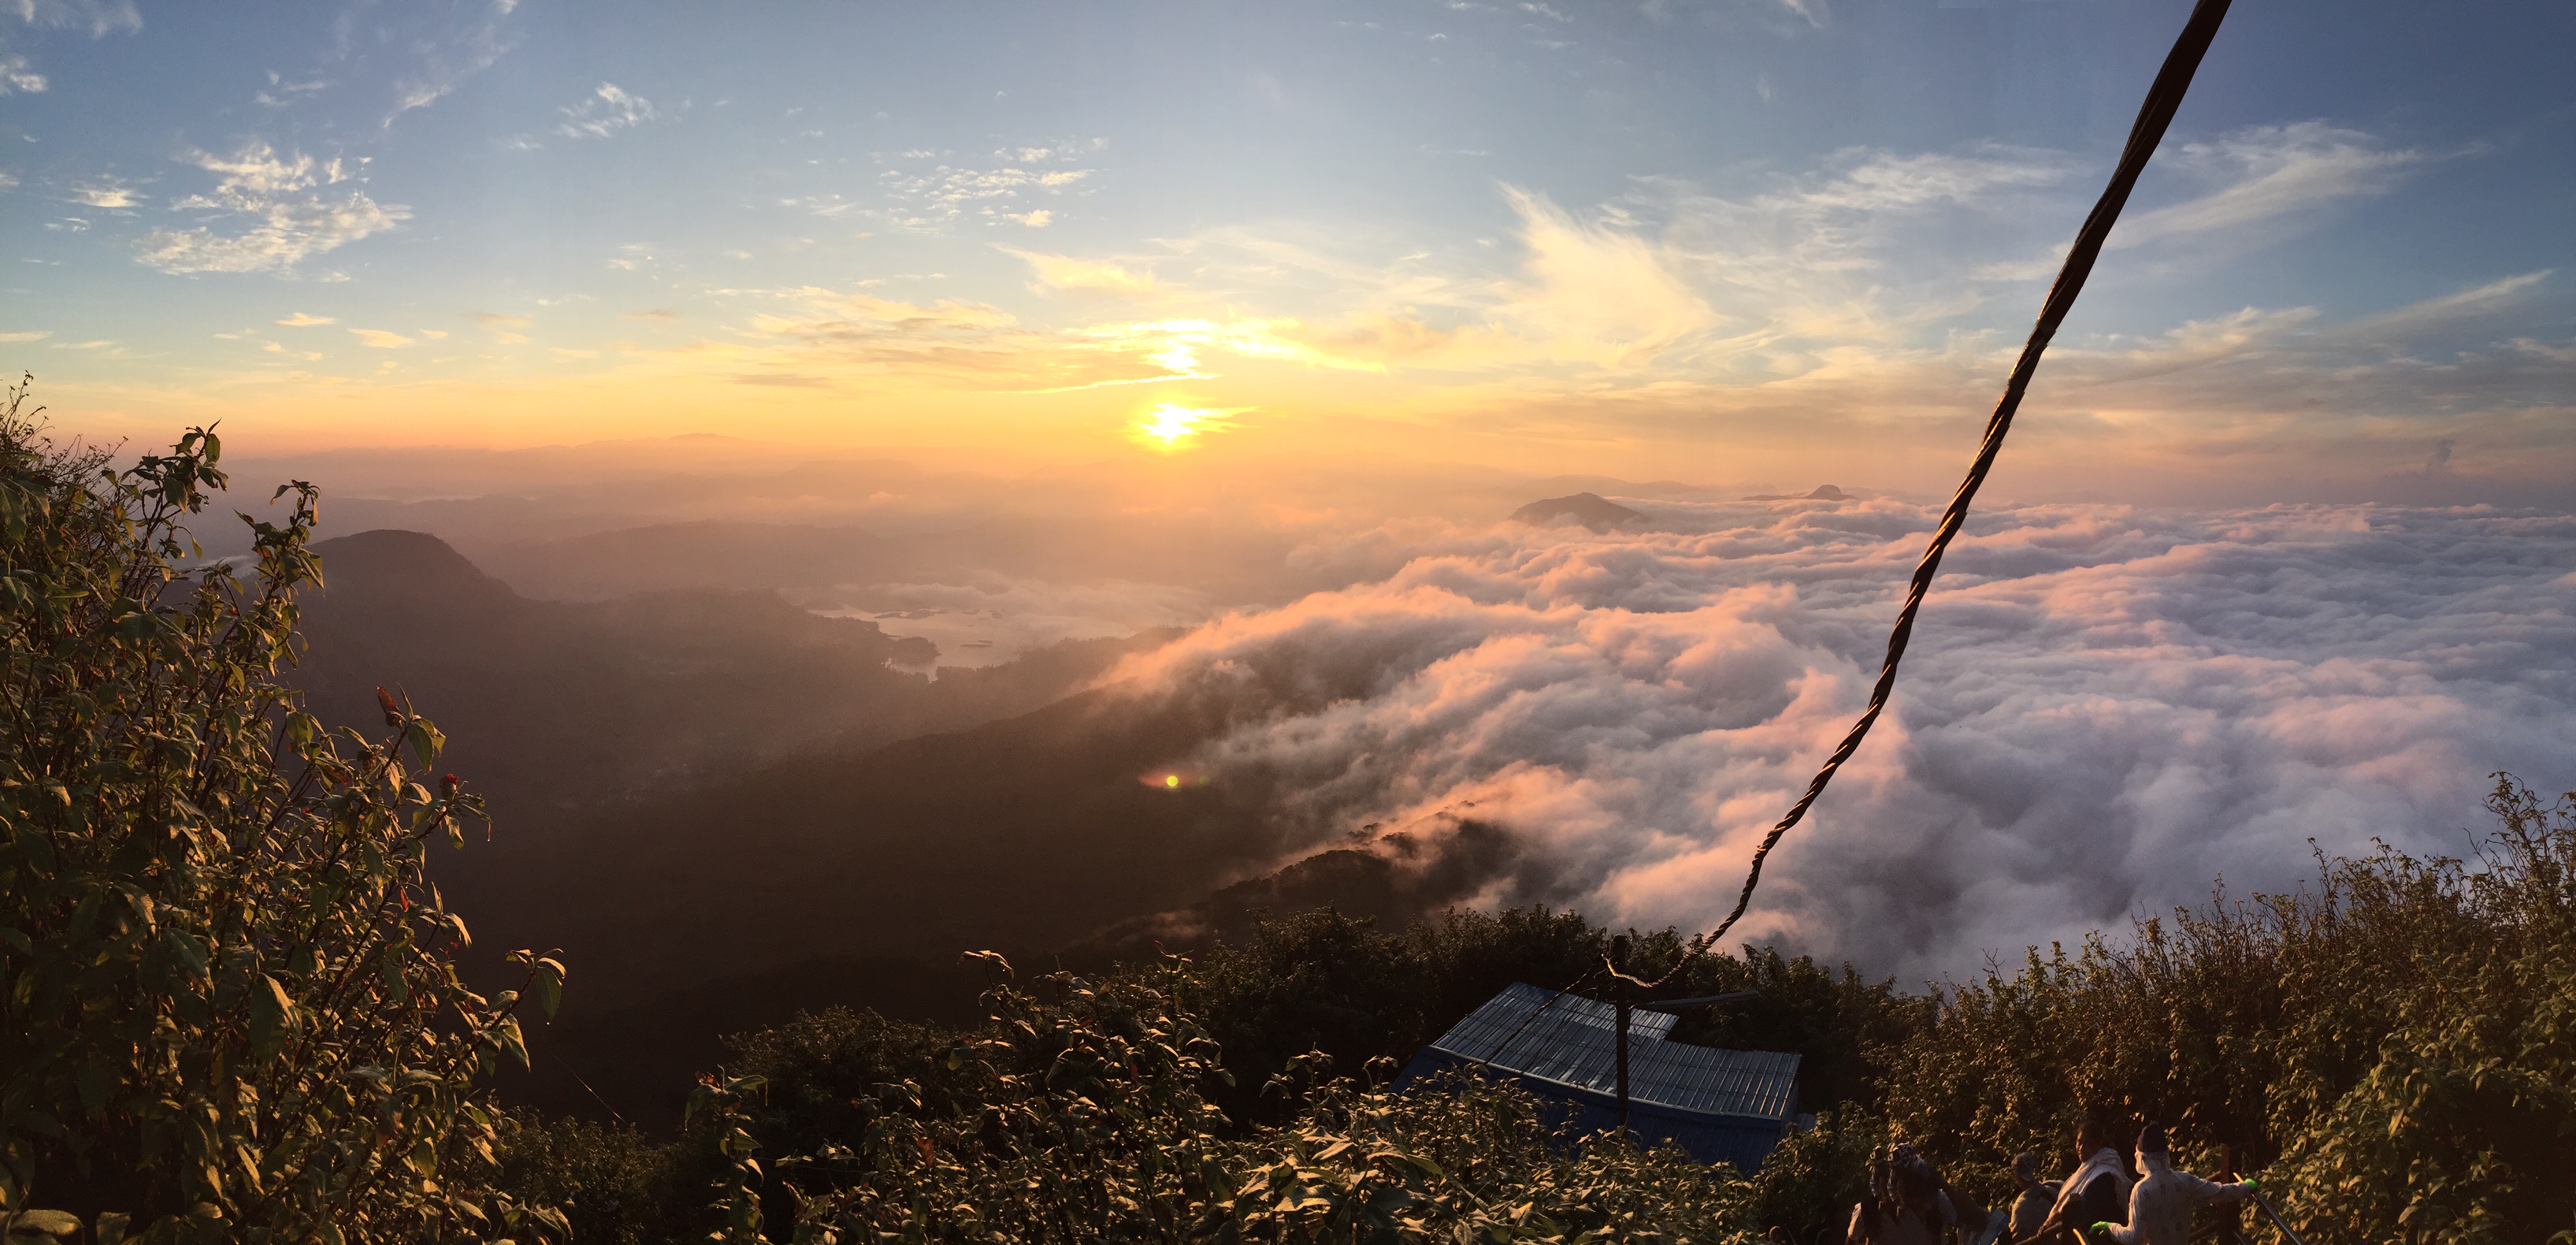 Sunrise Adams Peak Sri Lanka 